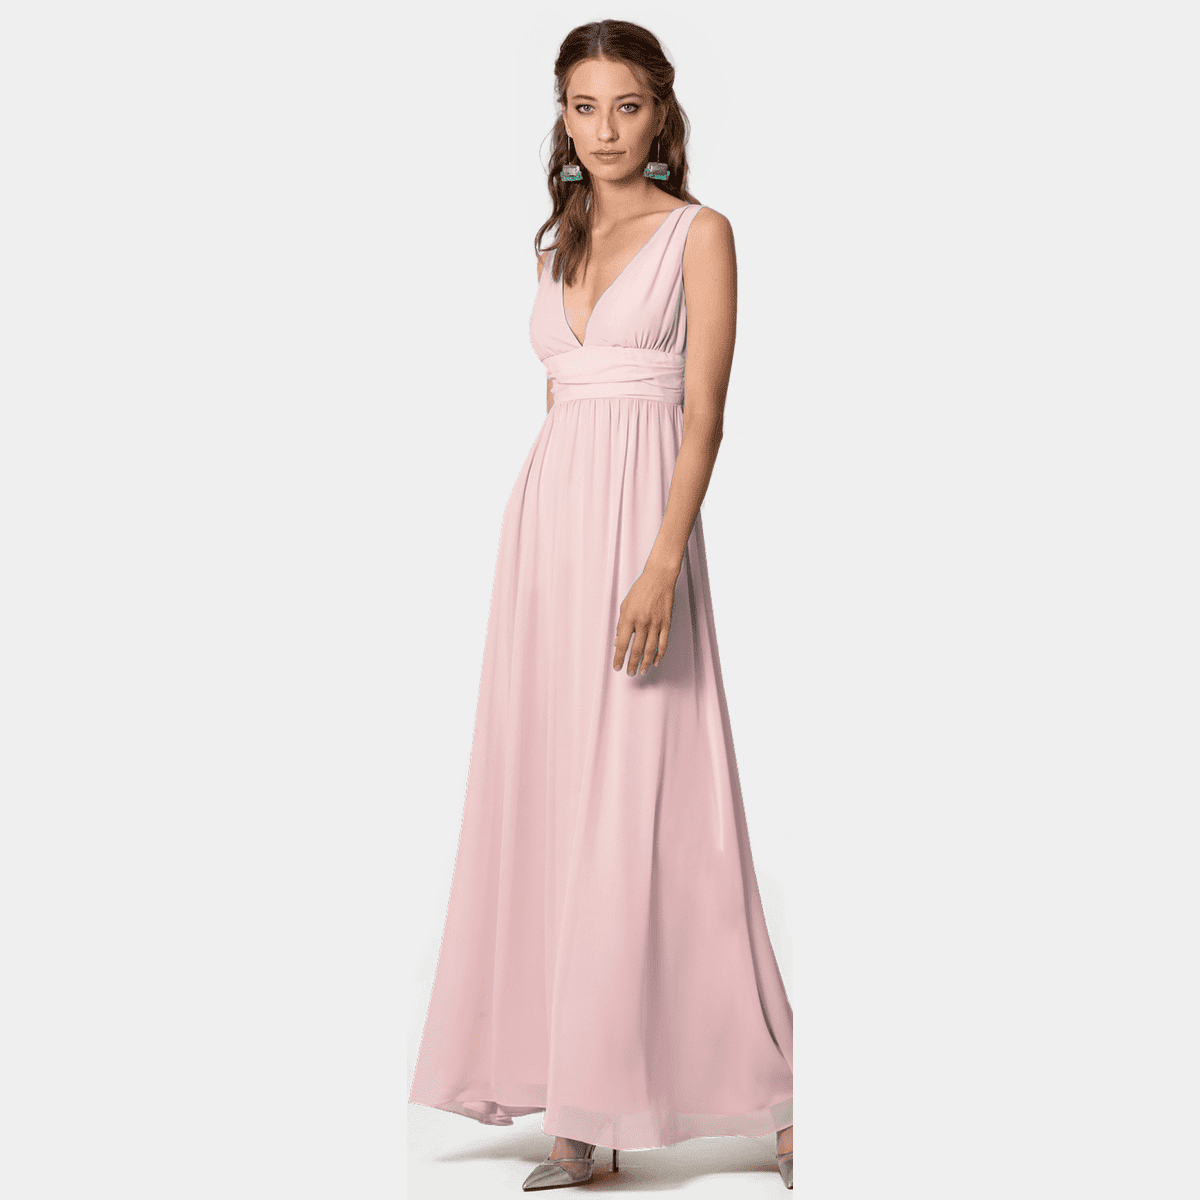 Hot Pink Dress - One-Shoulder Maxi Dress - Pink Sleeveless Dress - Lulus